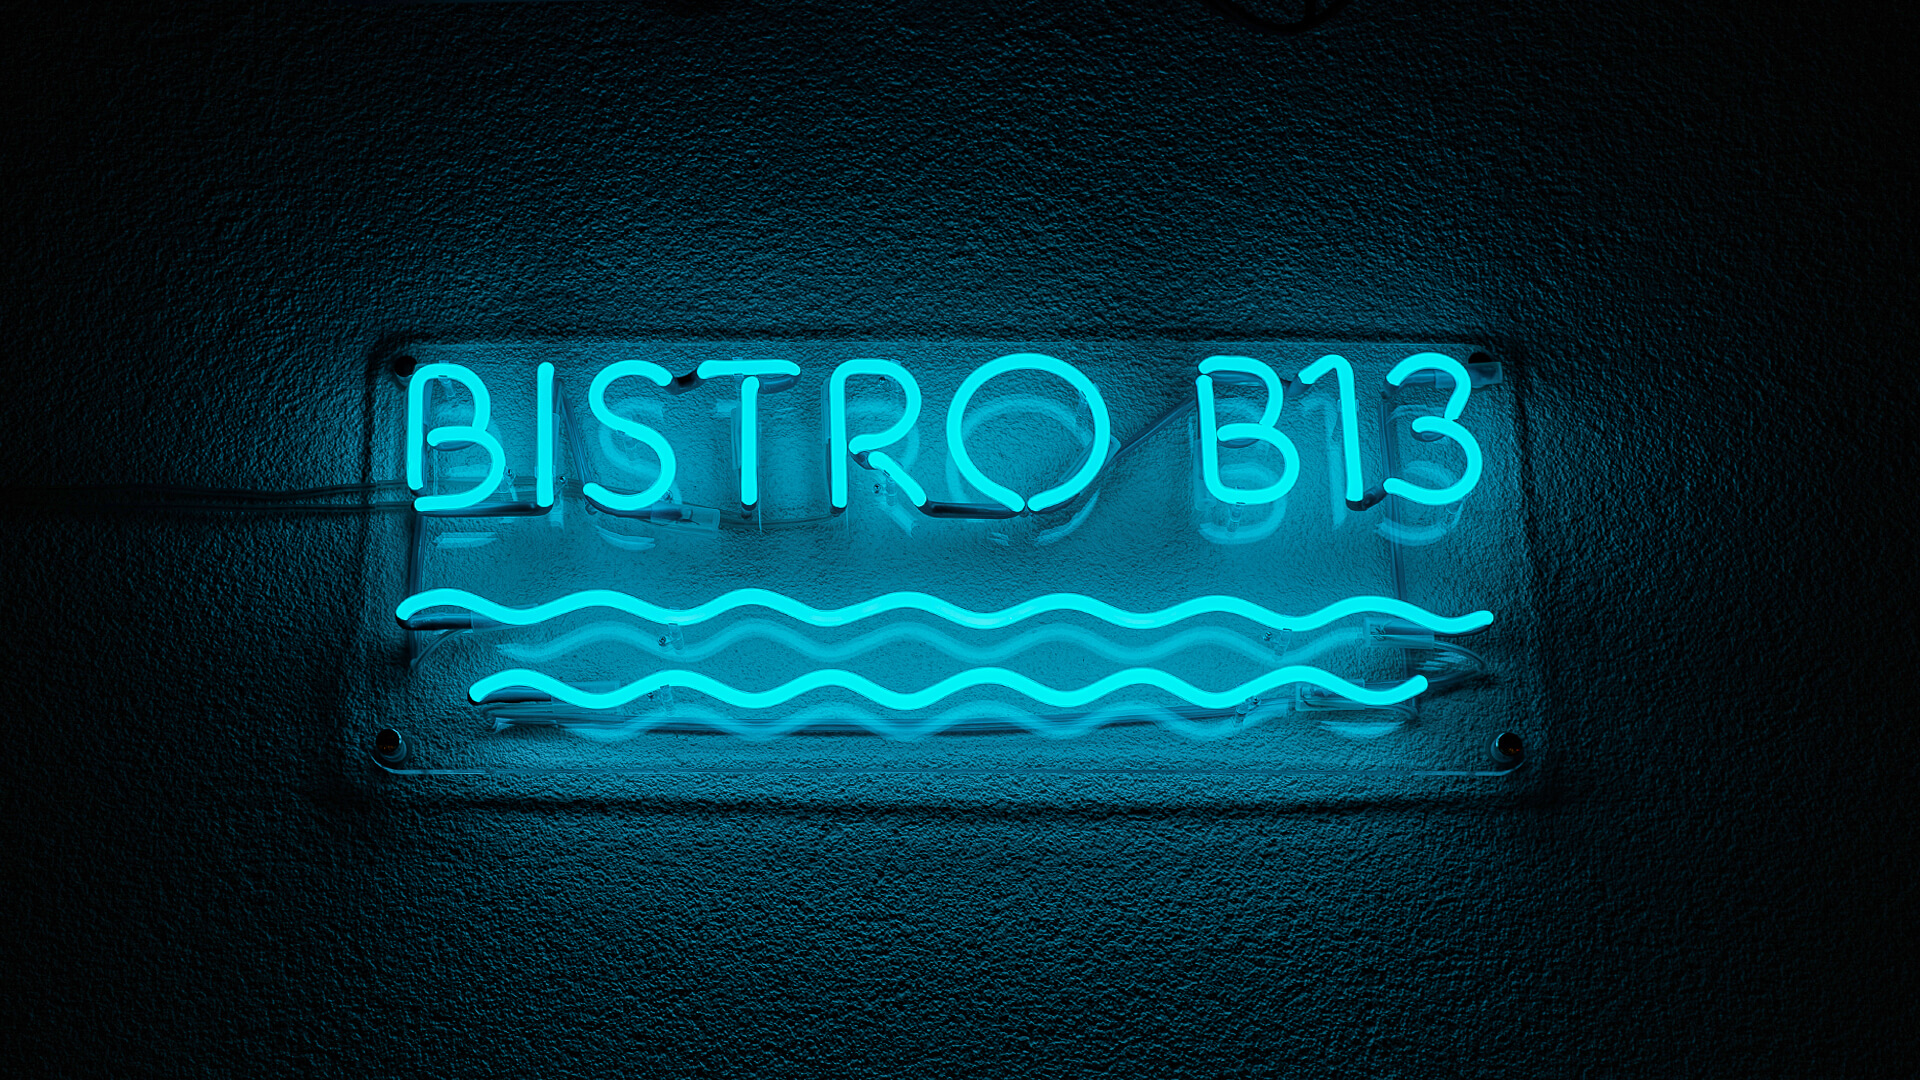 Bistro B13 - Cartel de neón azul de Bistro, con olas bajo el texto.